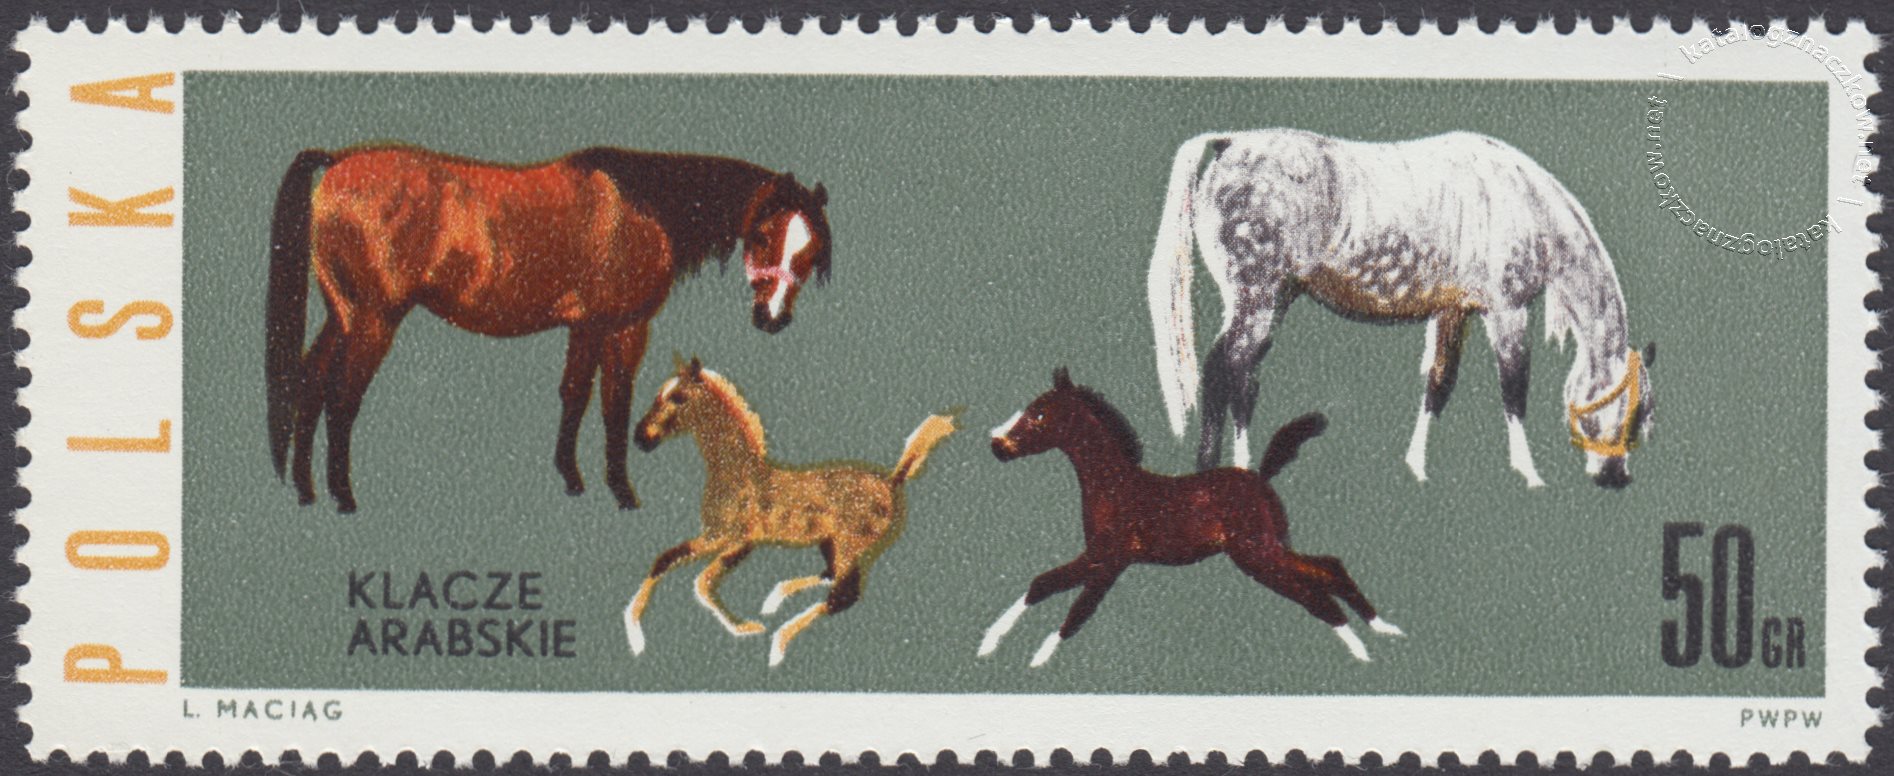 Konie polskie znaczek nr 1302